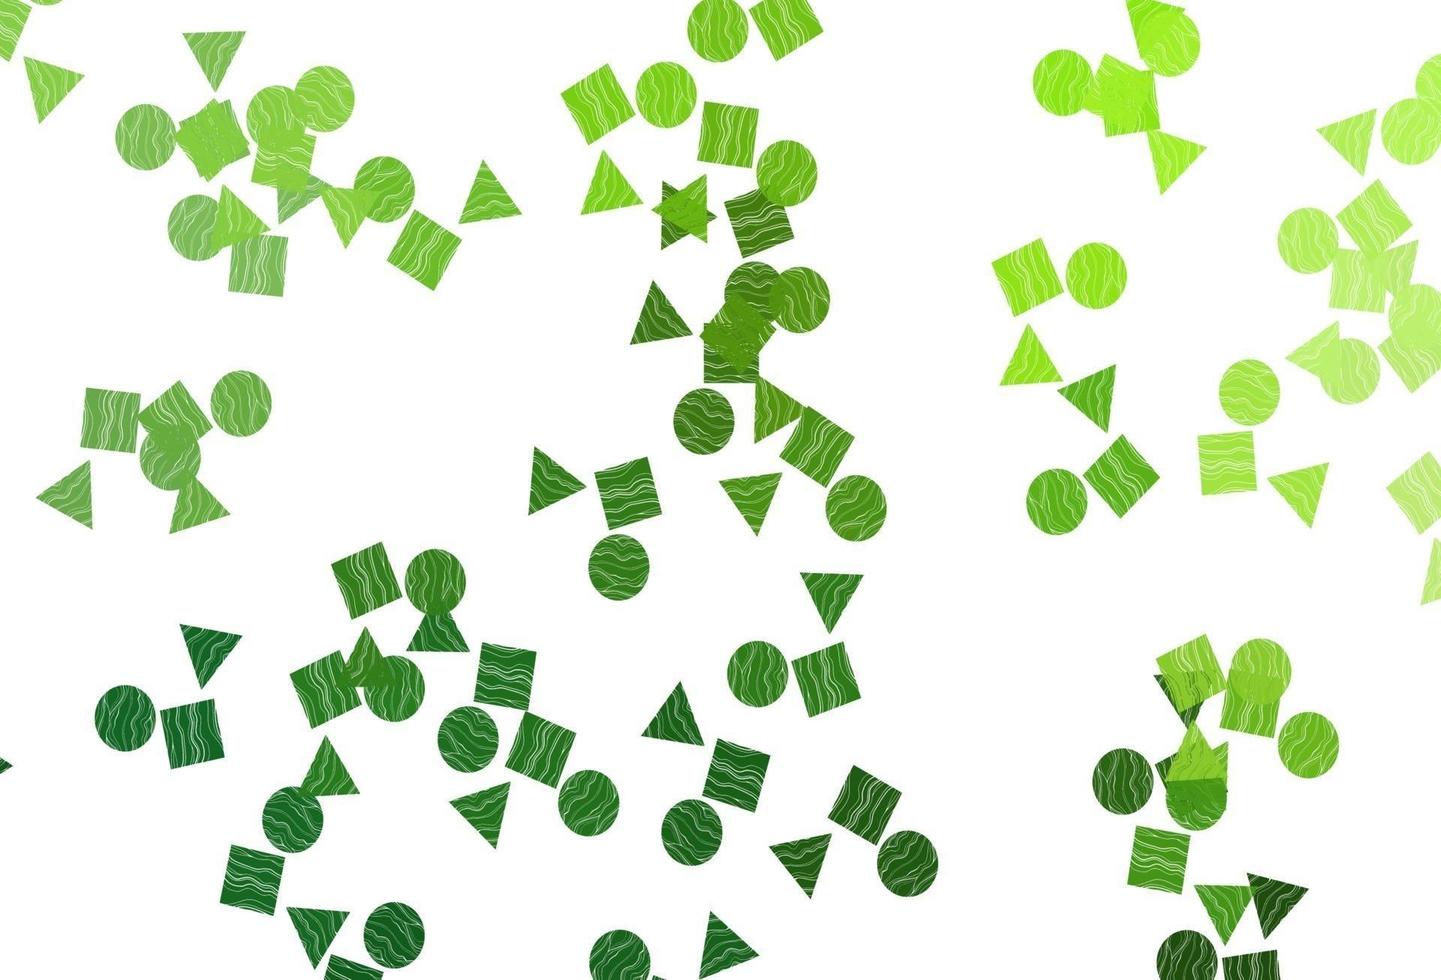 texture vettoriale verde chiaro in stile poli con cerchi, cubi.